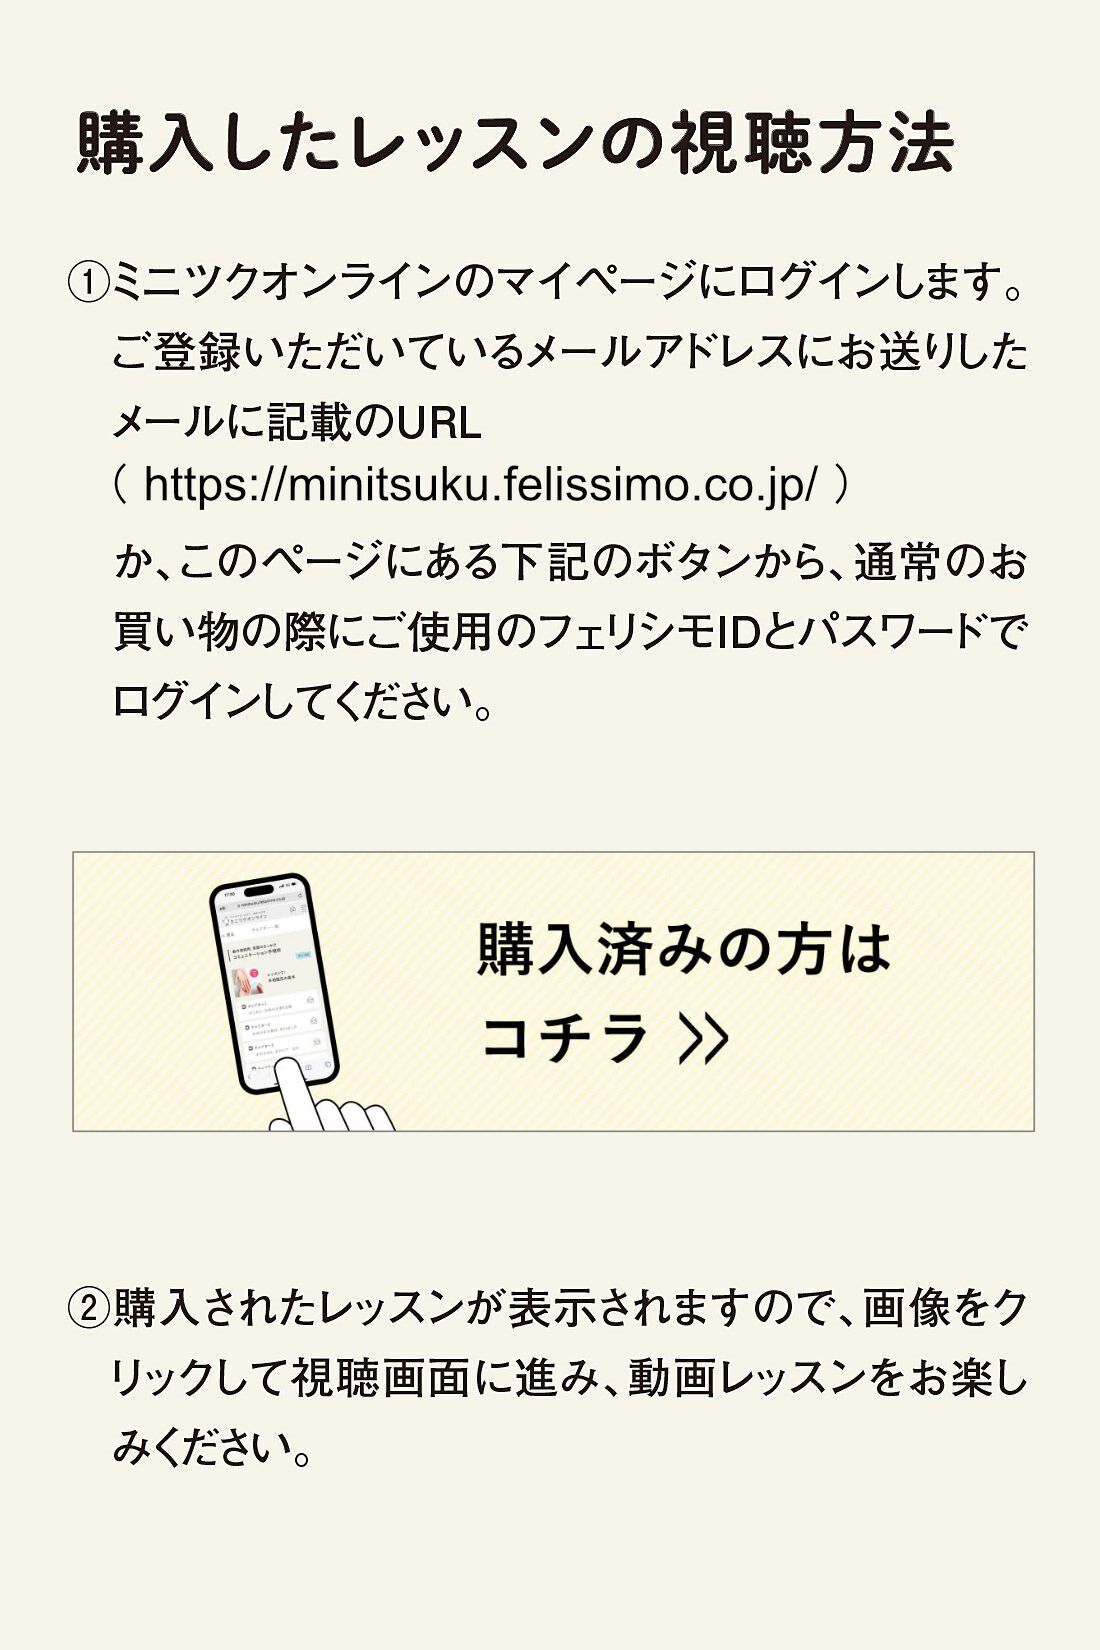 ミニツクオンライン|【ミニツクオンライン版】カラー筆ペンで描く　絵手紙のいろはレッスン|https://minitsuku.felissimo.co.jp/ か、このページに記載のボタンからレッスンページに進んでください。